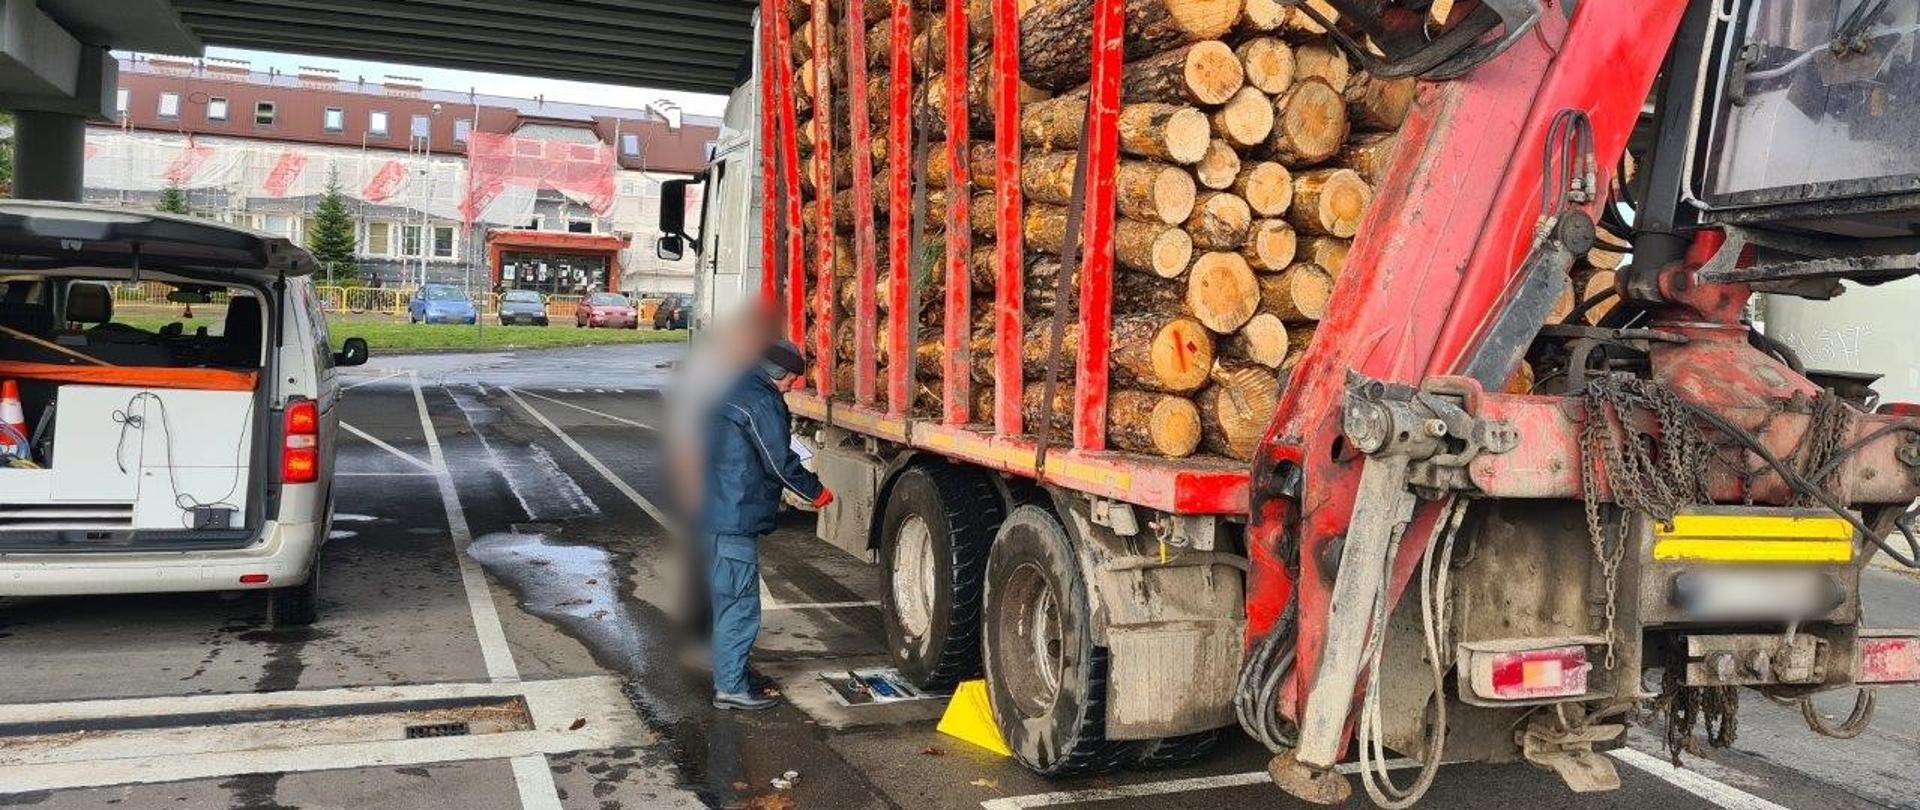 Ponad 38 t zamiast dopuszczalnych 26 ważyła ciężarówka przewożąca kłody drewna. Nienormatywny pojazd zatrzymali do kontroli i wycofali tymczasowo z dalszej jazdy inspektorzy podkarpackiej Inspekcji Transportu Drogowego.